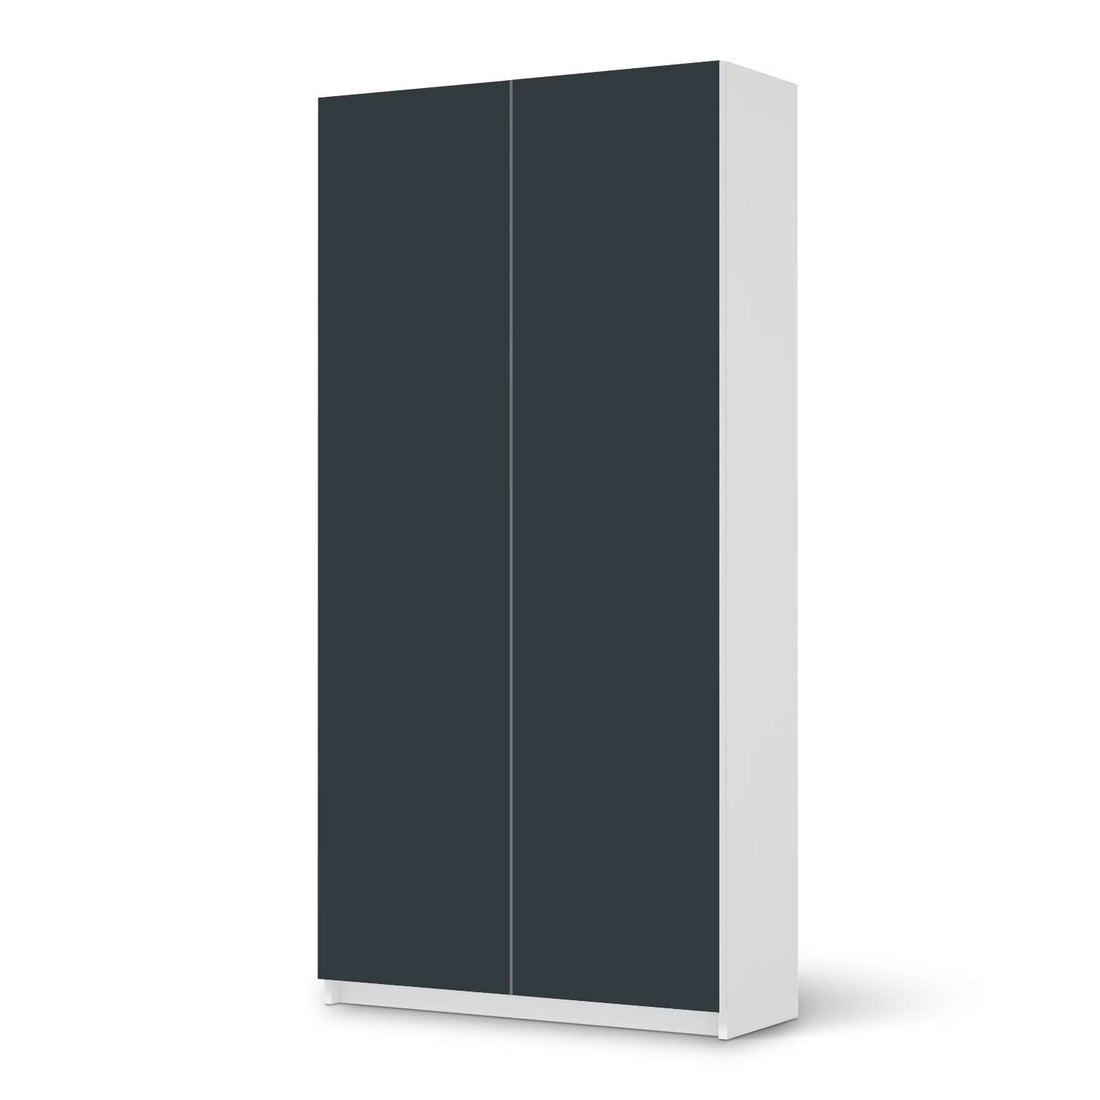 Klebefolie für Möbel Blaugrau Dark - IKEA Pax Schrank 201 cm Höhe - 2 Türen - weiss